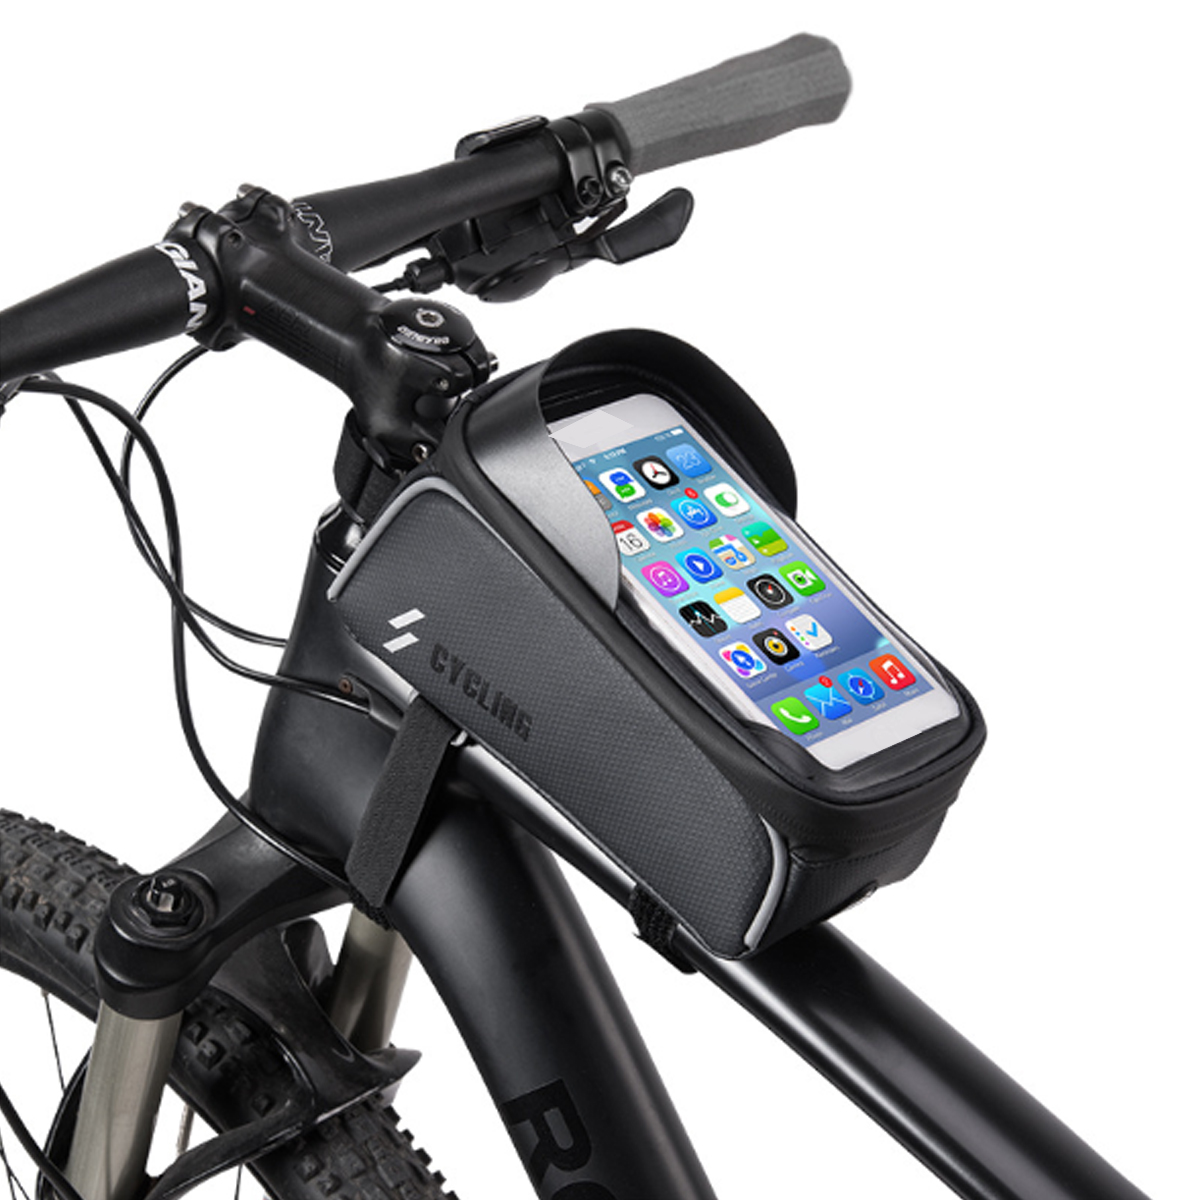 

BIKIGHT Передняя рама для велосипеда Трубка Сумка Водонепроницаемы Сенсорный экран 6,0 Телефон Чехол Велоспор